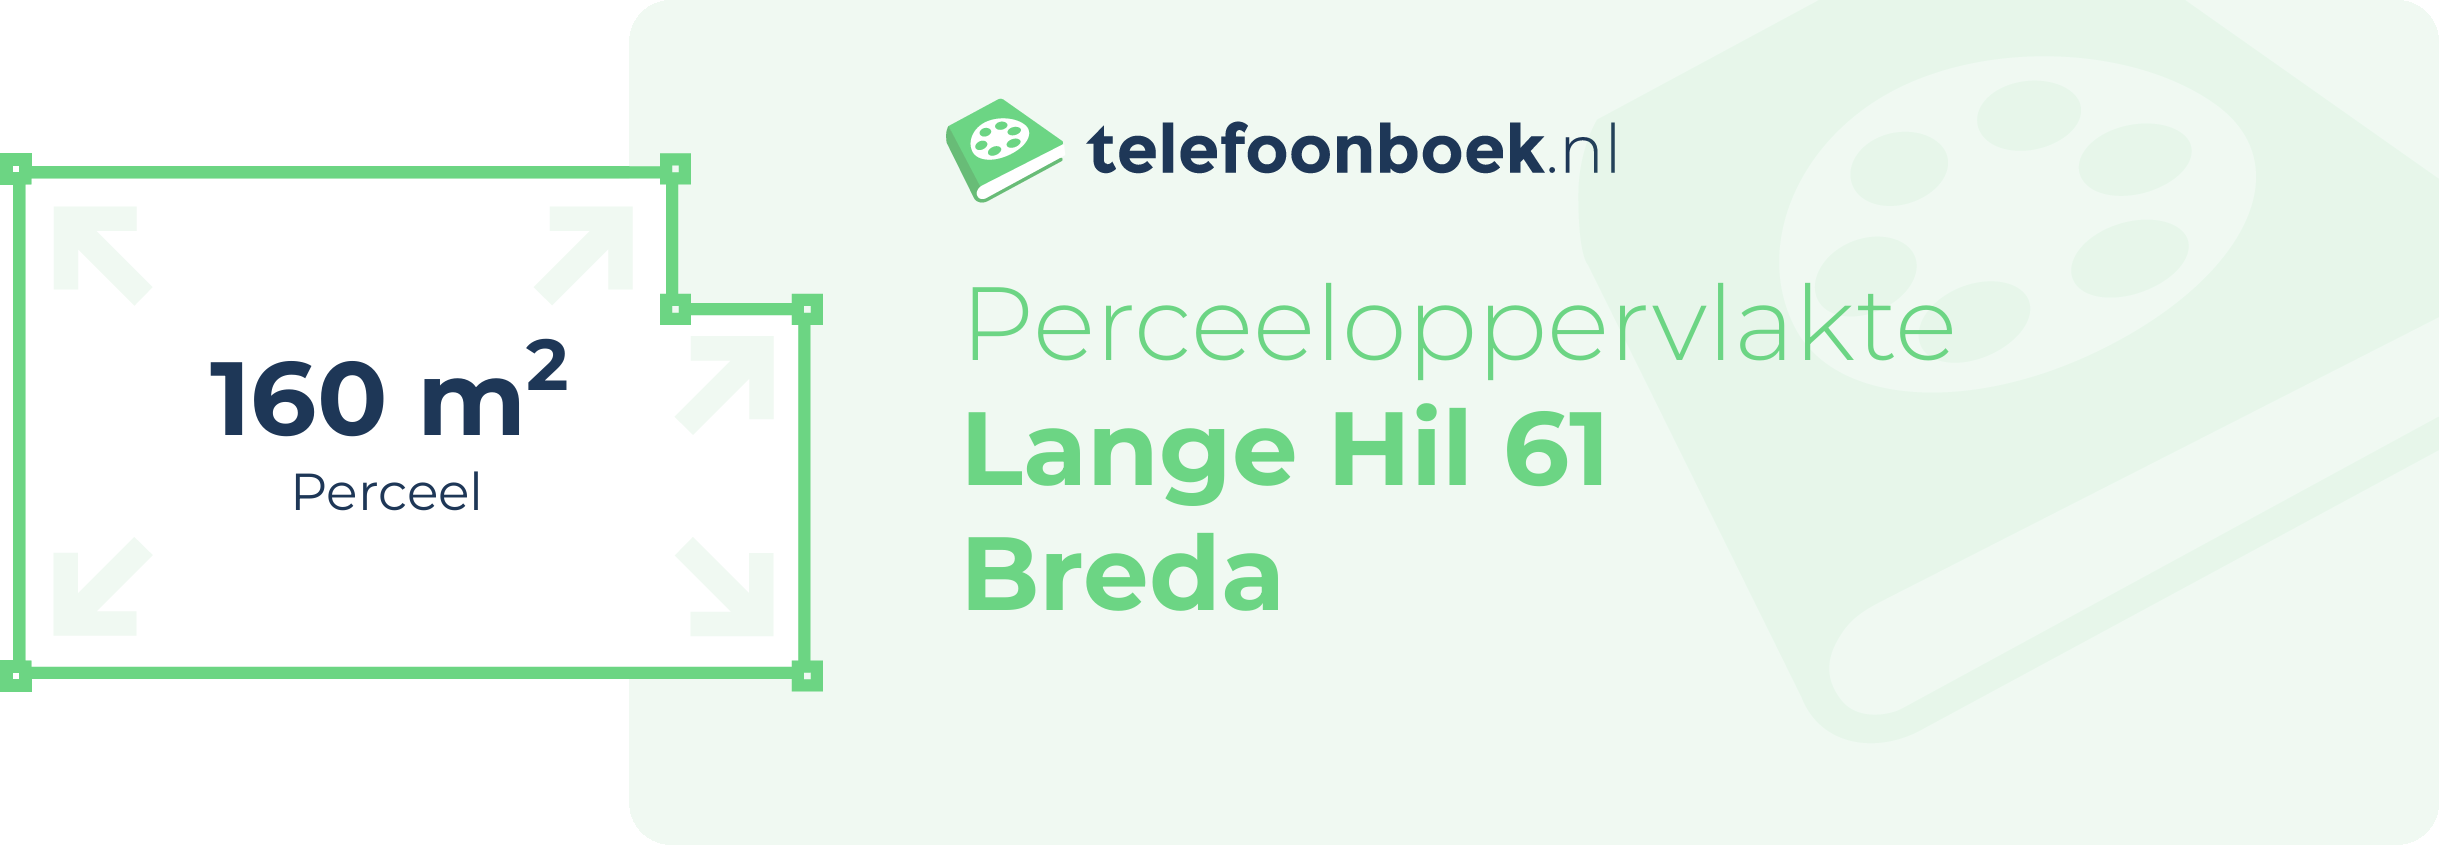 Perceeloppervlakte Lange Hil 61 Breda